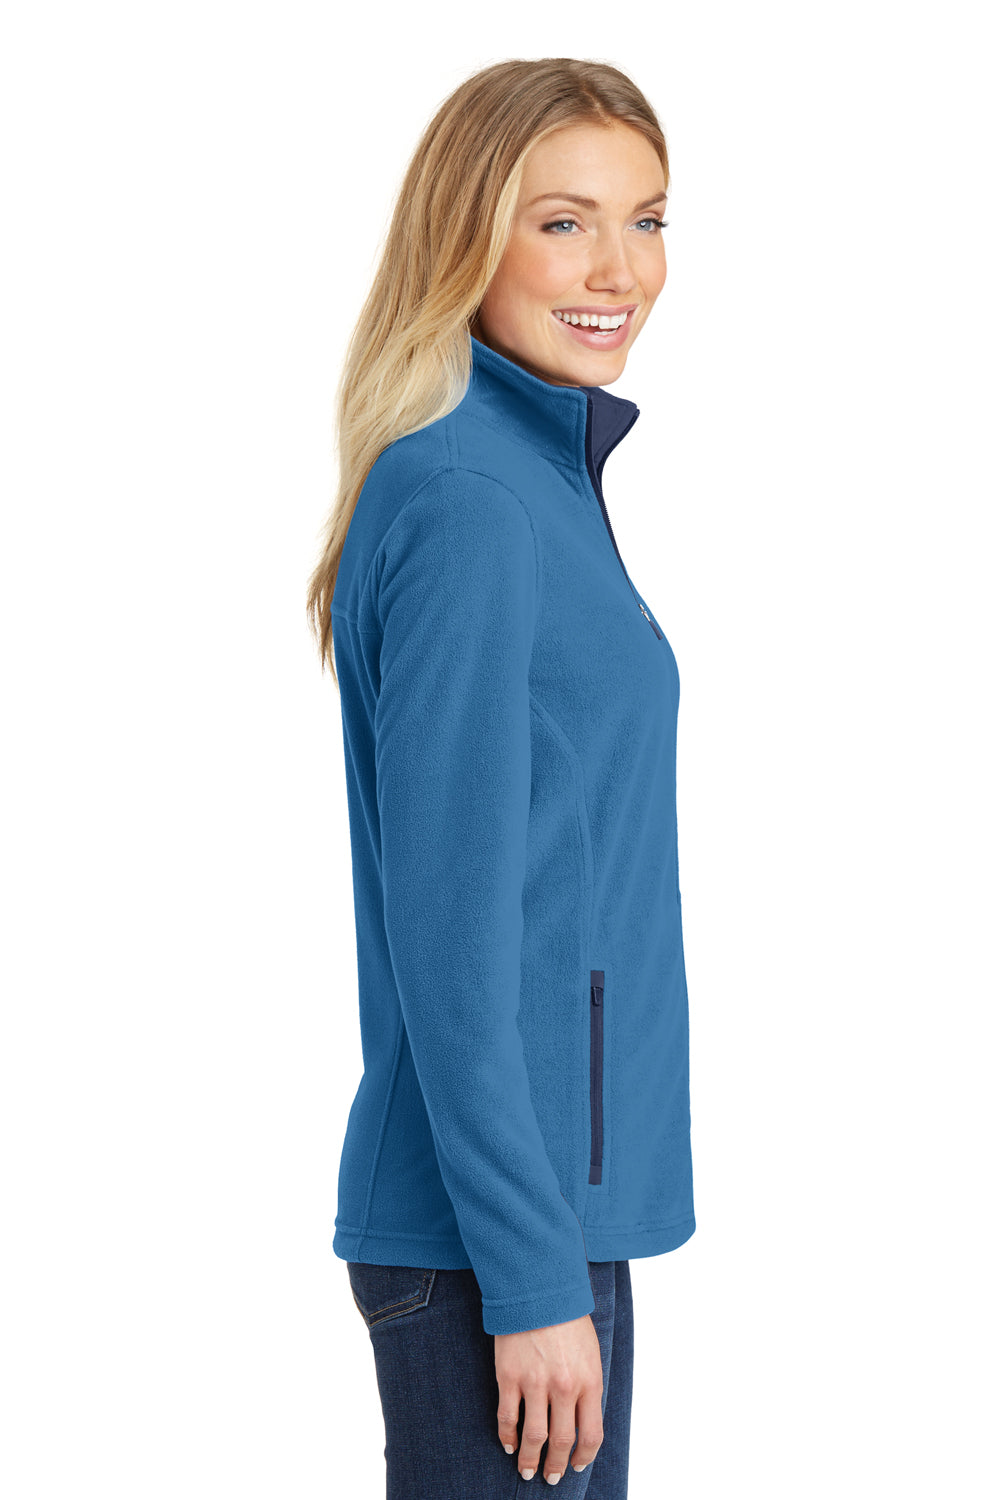 Port Authority L233 Womens Summit Full Zip Fleece Jacket Regal Blue/Navy Blue Side